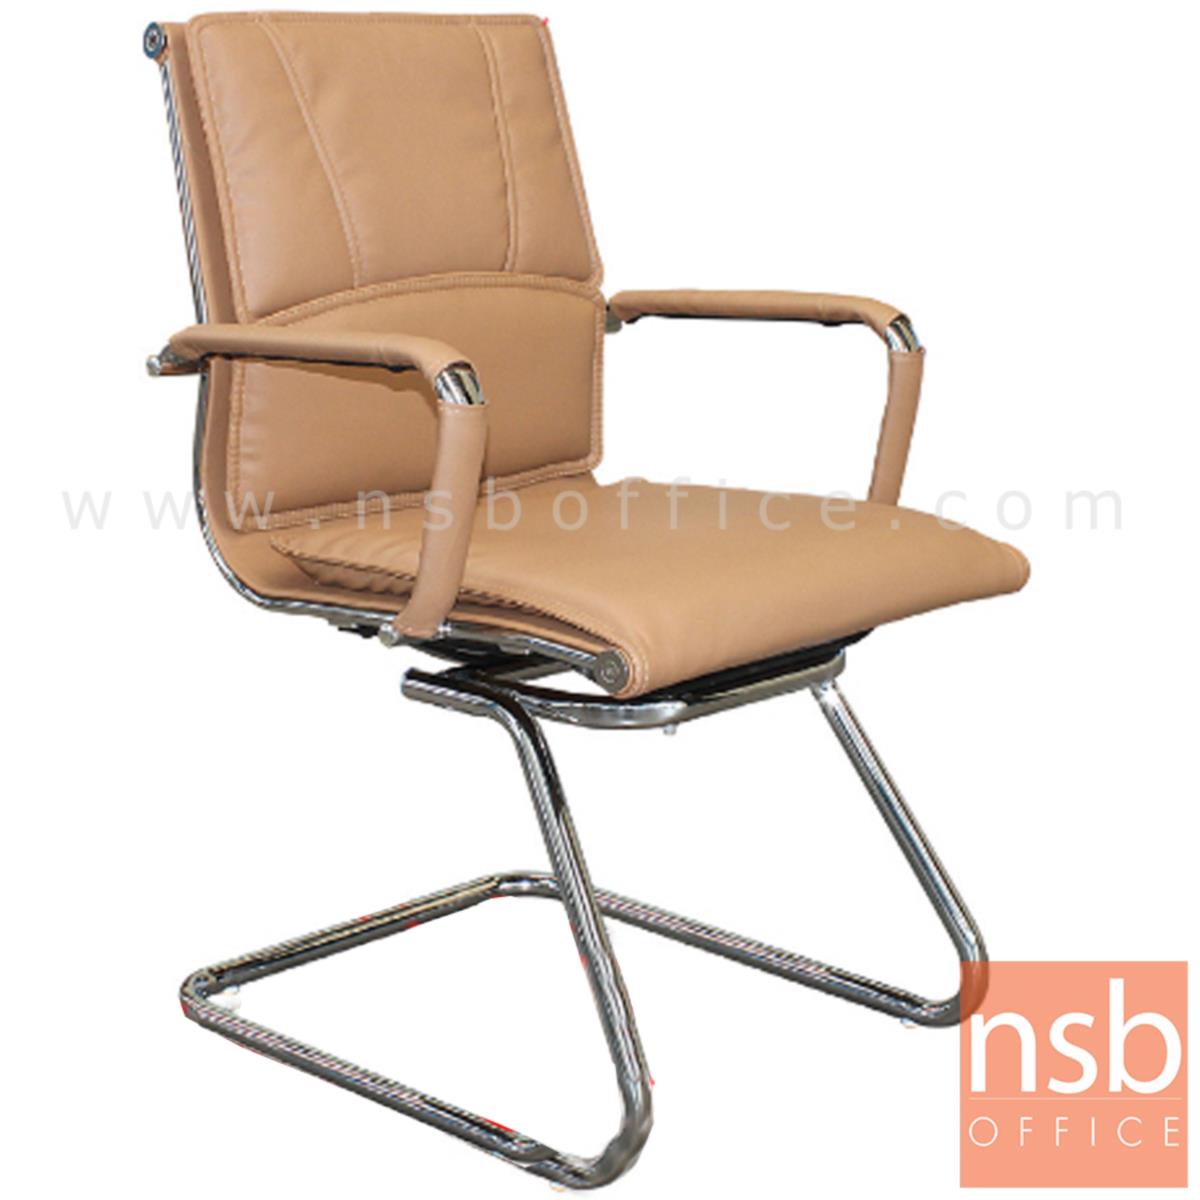 B04A110:เก้าอี้รับแขกขาตัวซี รุ่น Sombra (ซอมบรา)  ขาเหล็กชุบโครเมี่ยม